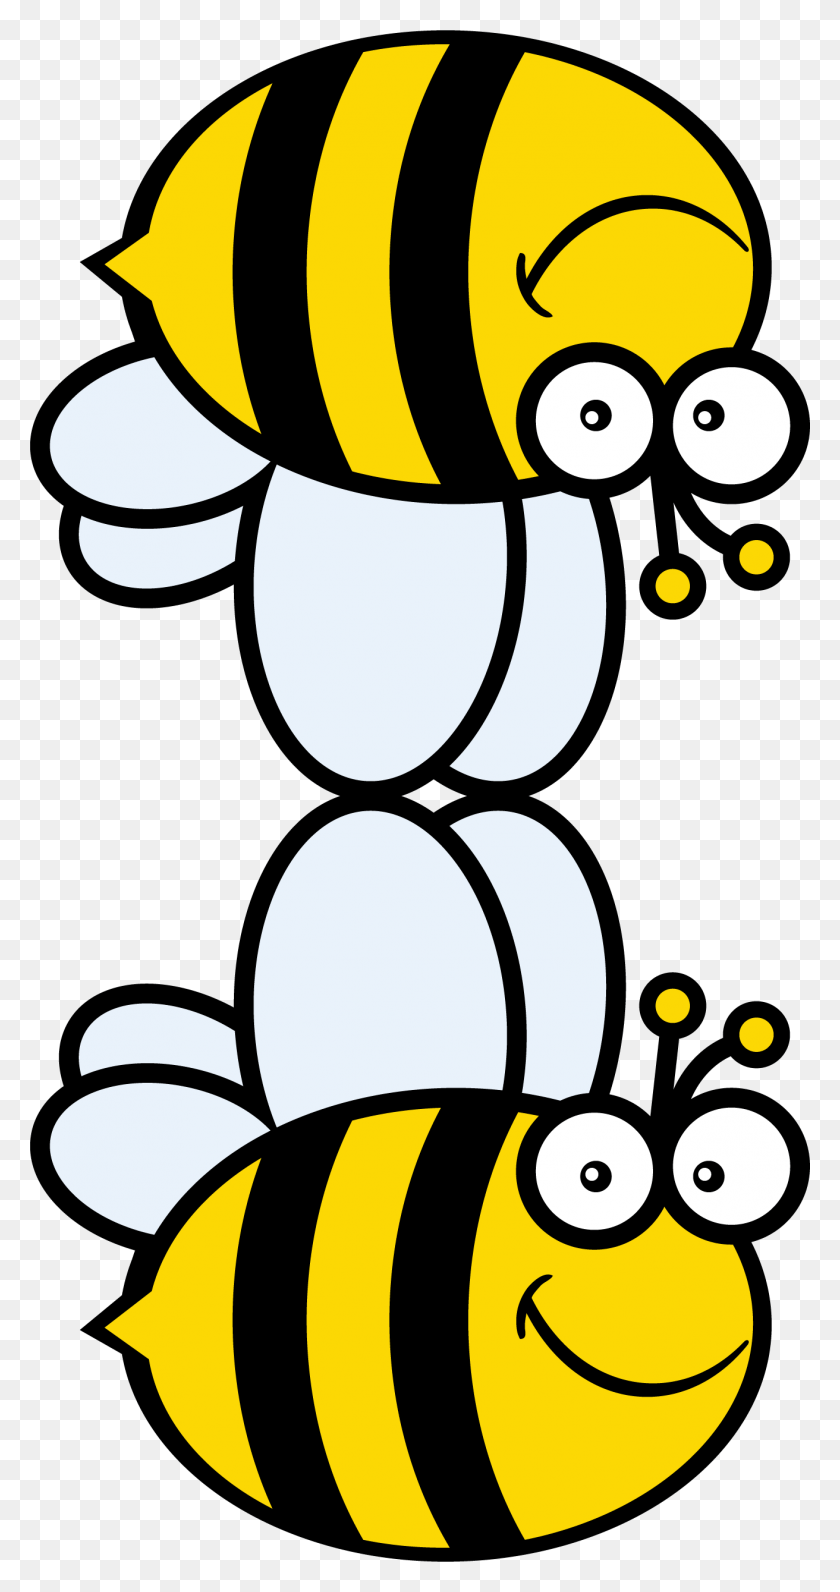 1312x2577 Пчела Иллюстрации Для Пчелы Счастливый Баннер, Оса, Насекомое, Беспозвоночные Hd Png Скачать